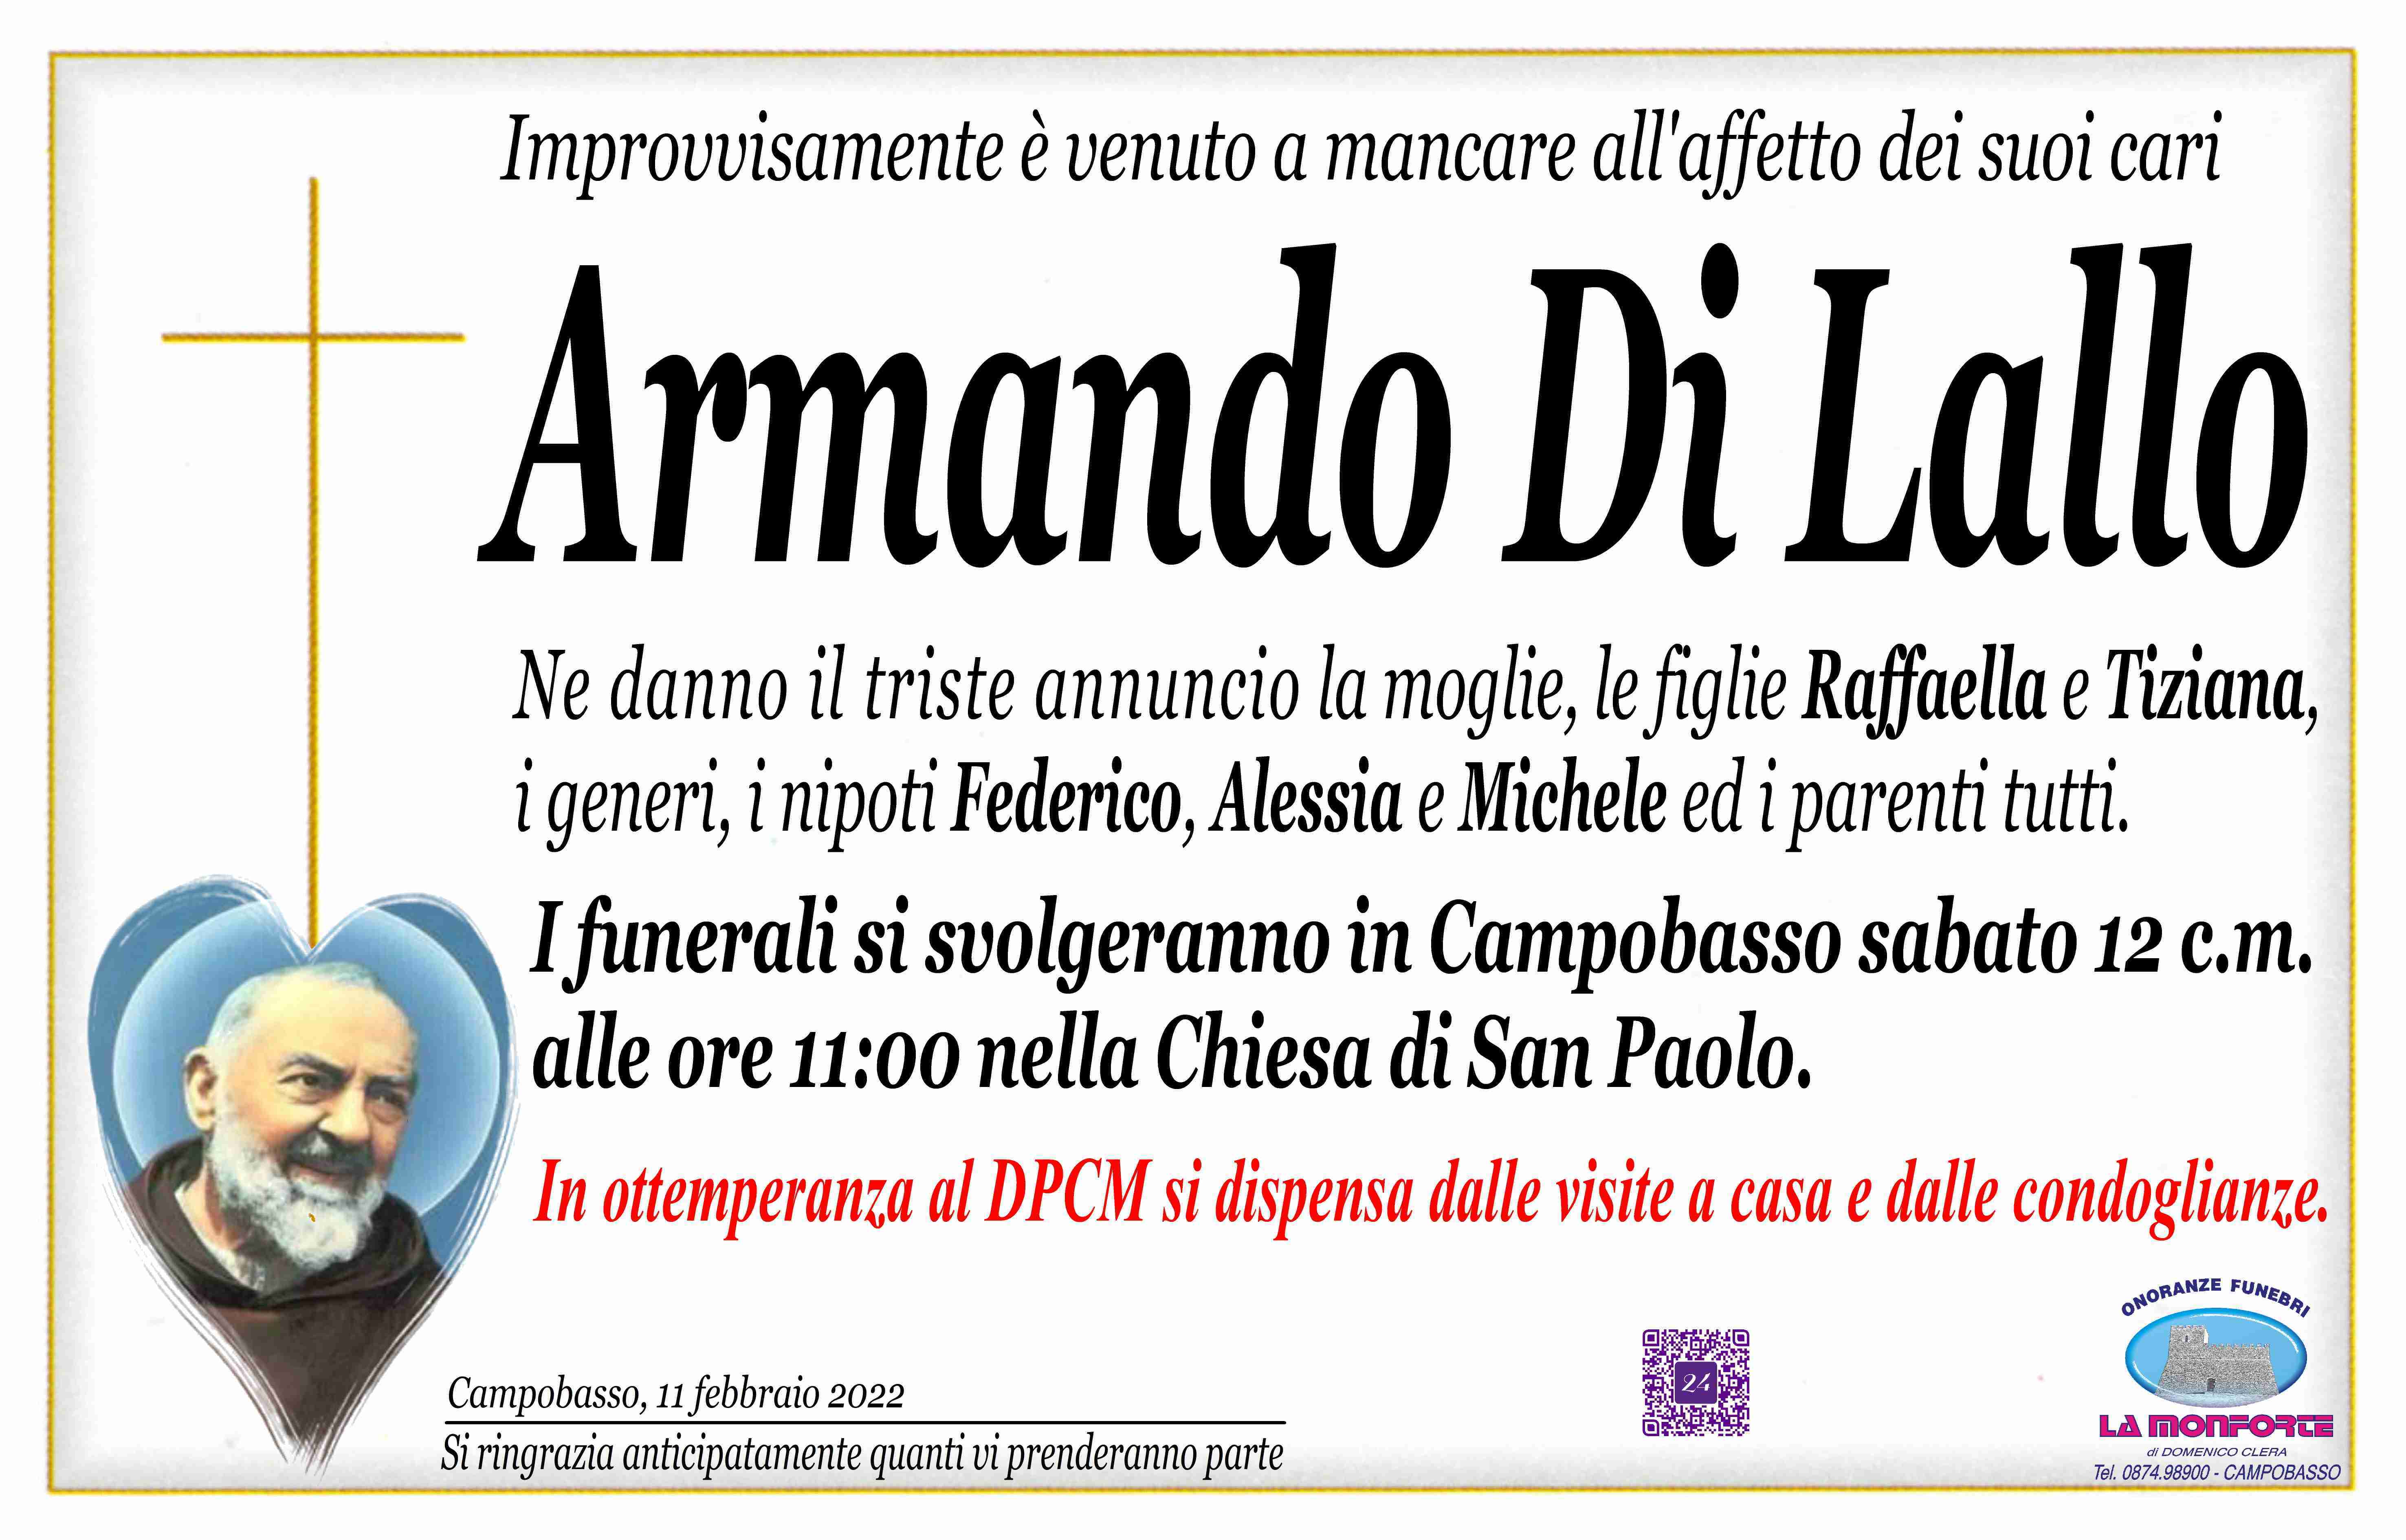 Armando Rocco Di Lallo